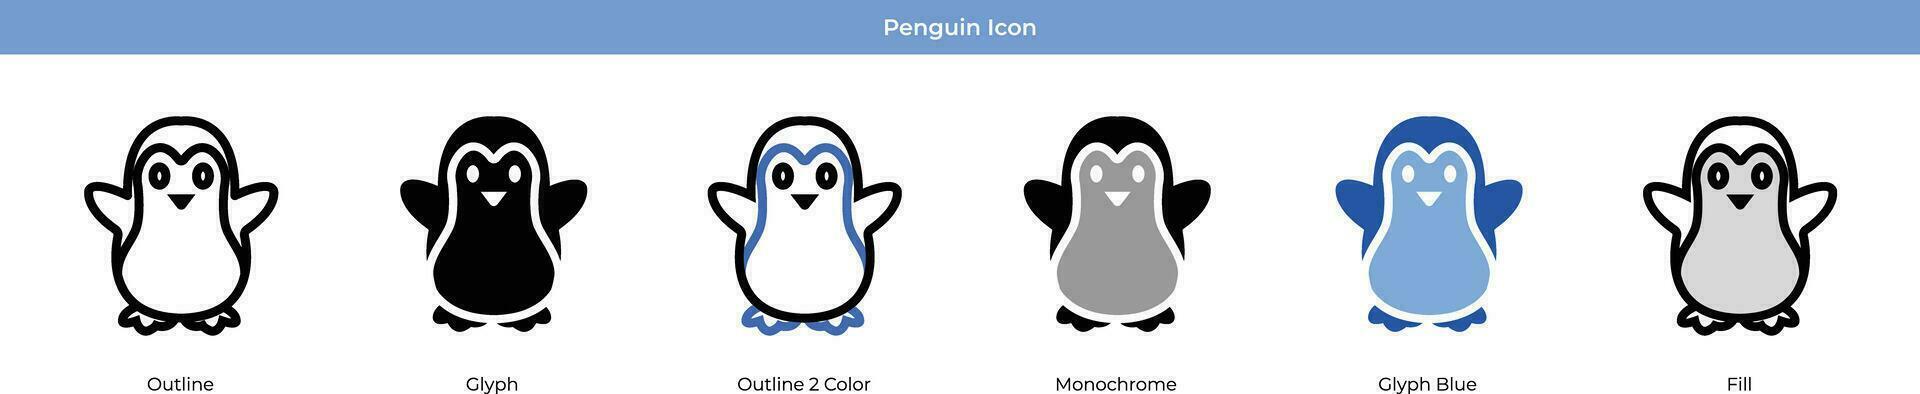 pingvin ikon uppsättning vektor